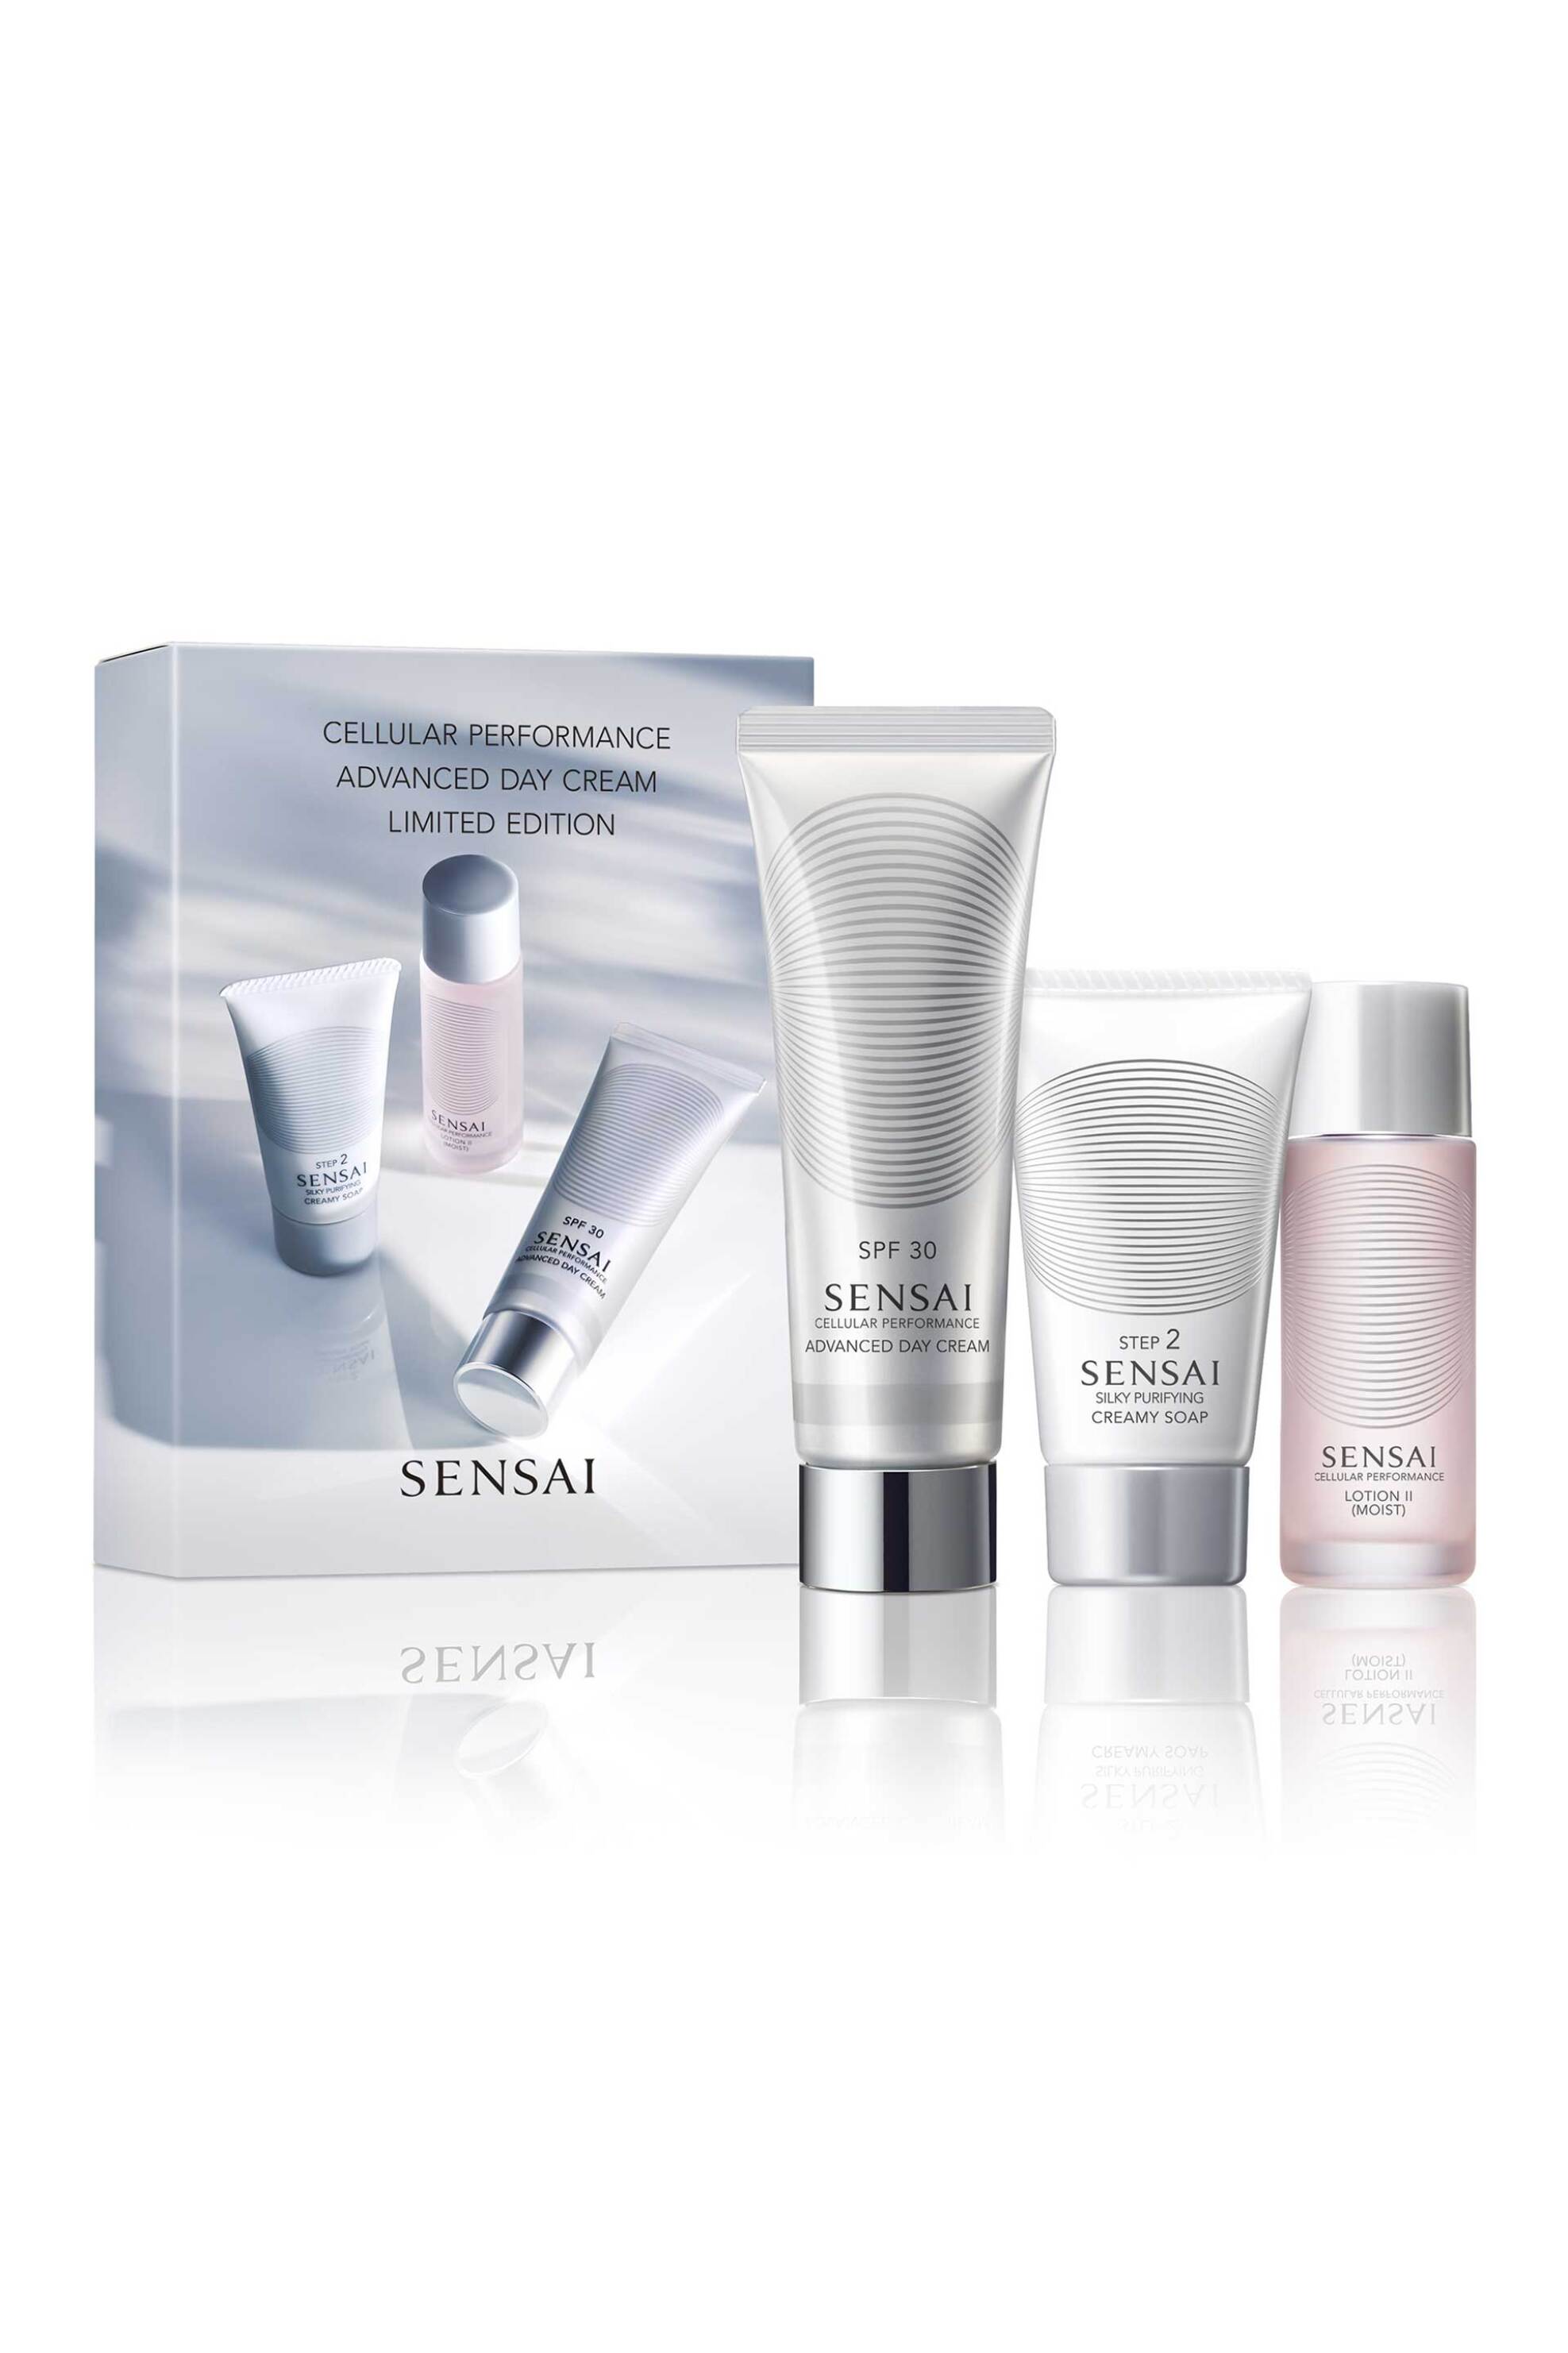 Προϊόντα Ομορφιάς > Περιποίηση Προσώπου > Σετ Περιποίησης Προσώπου Sensai Cellular Performance Advance Day Cream Set Limited Edition - 52132